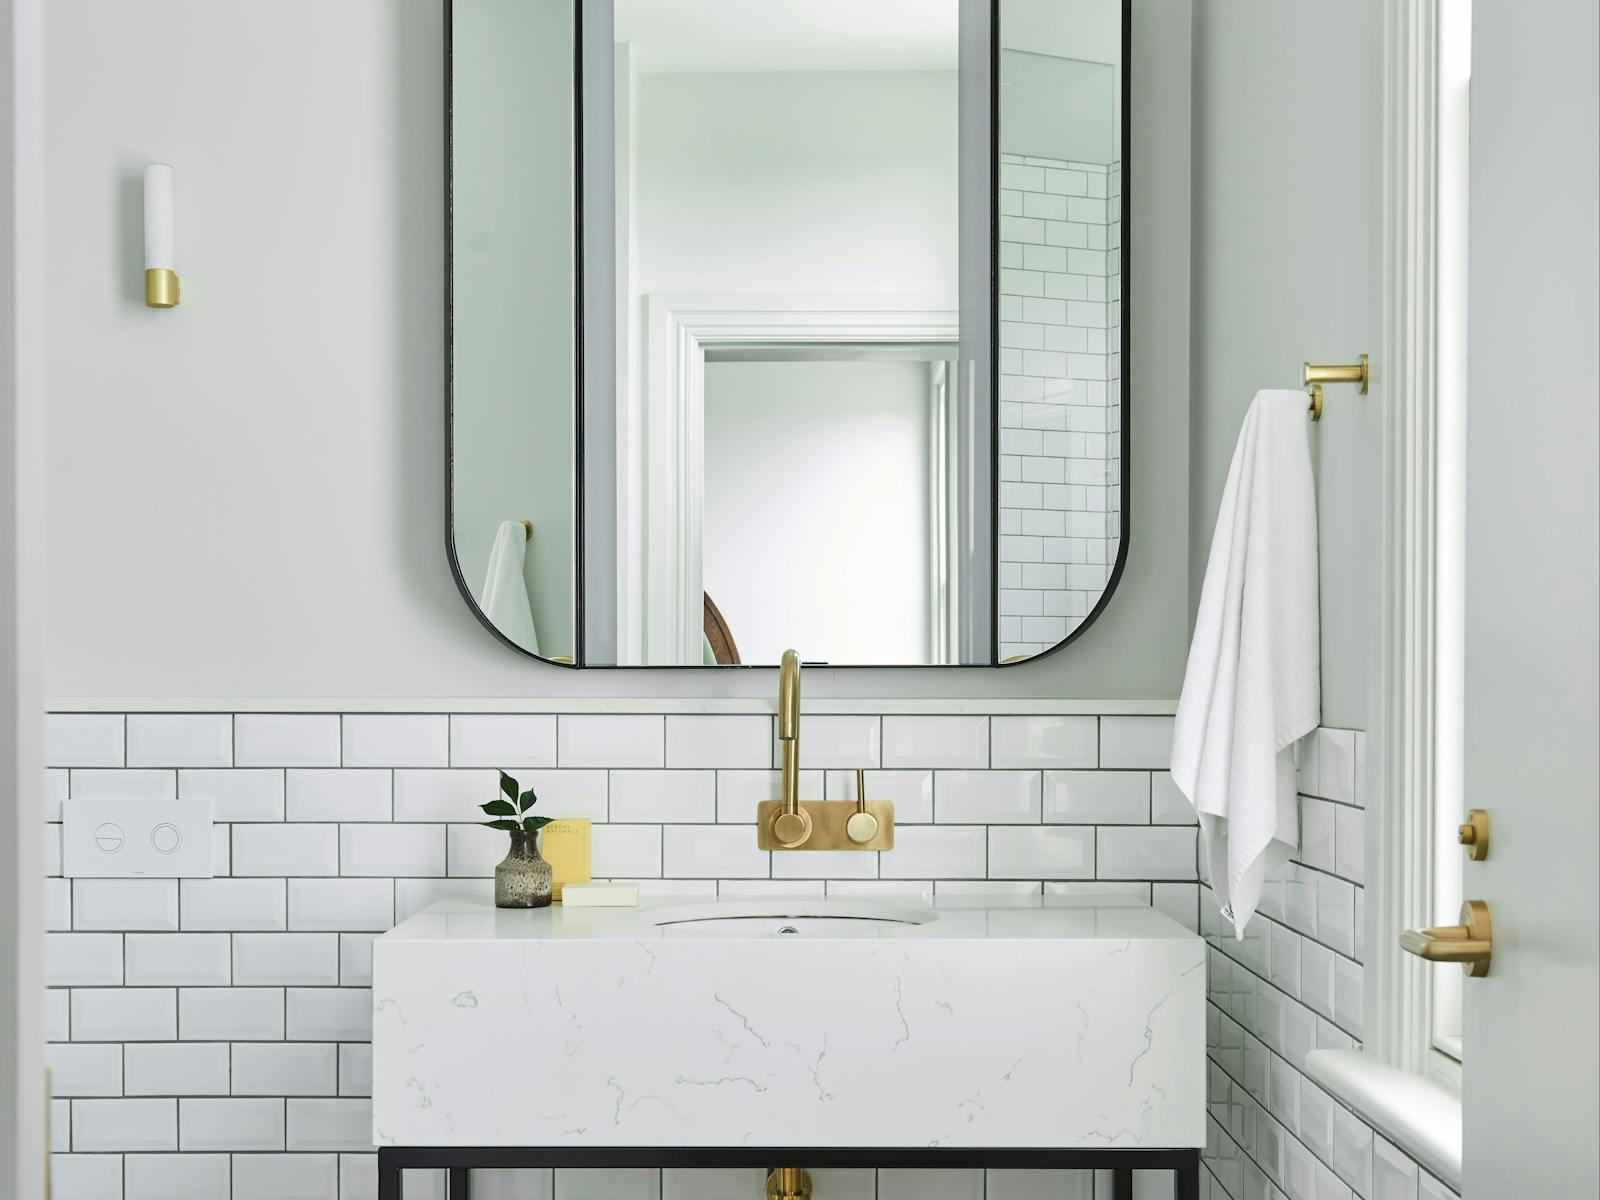 Bathroom mirror and vanity with brass fixtures